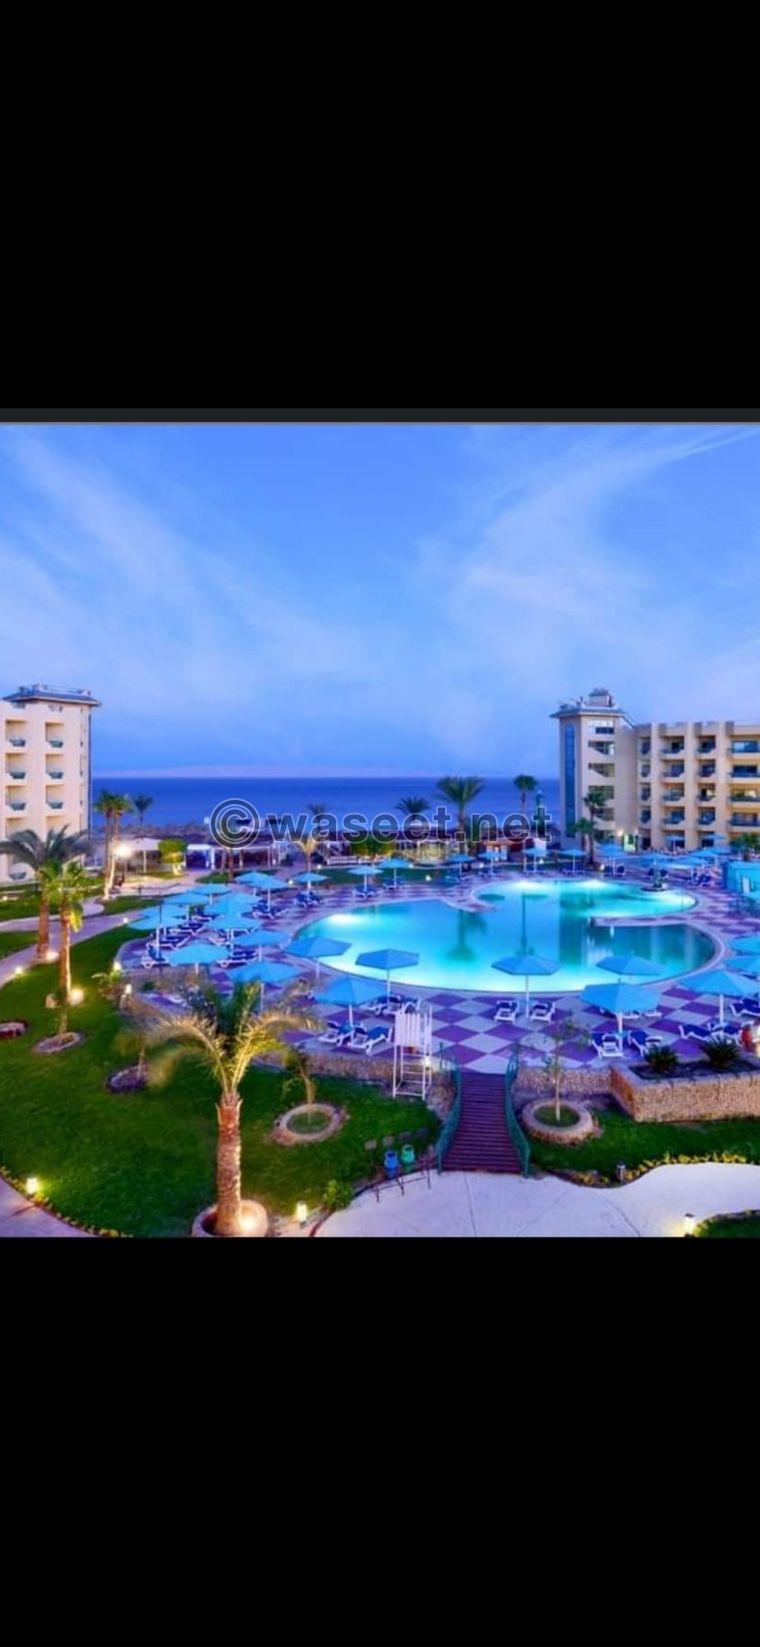 فندق سياحي للبيع في شرم الشيخ على البحر مباشرة 0